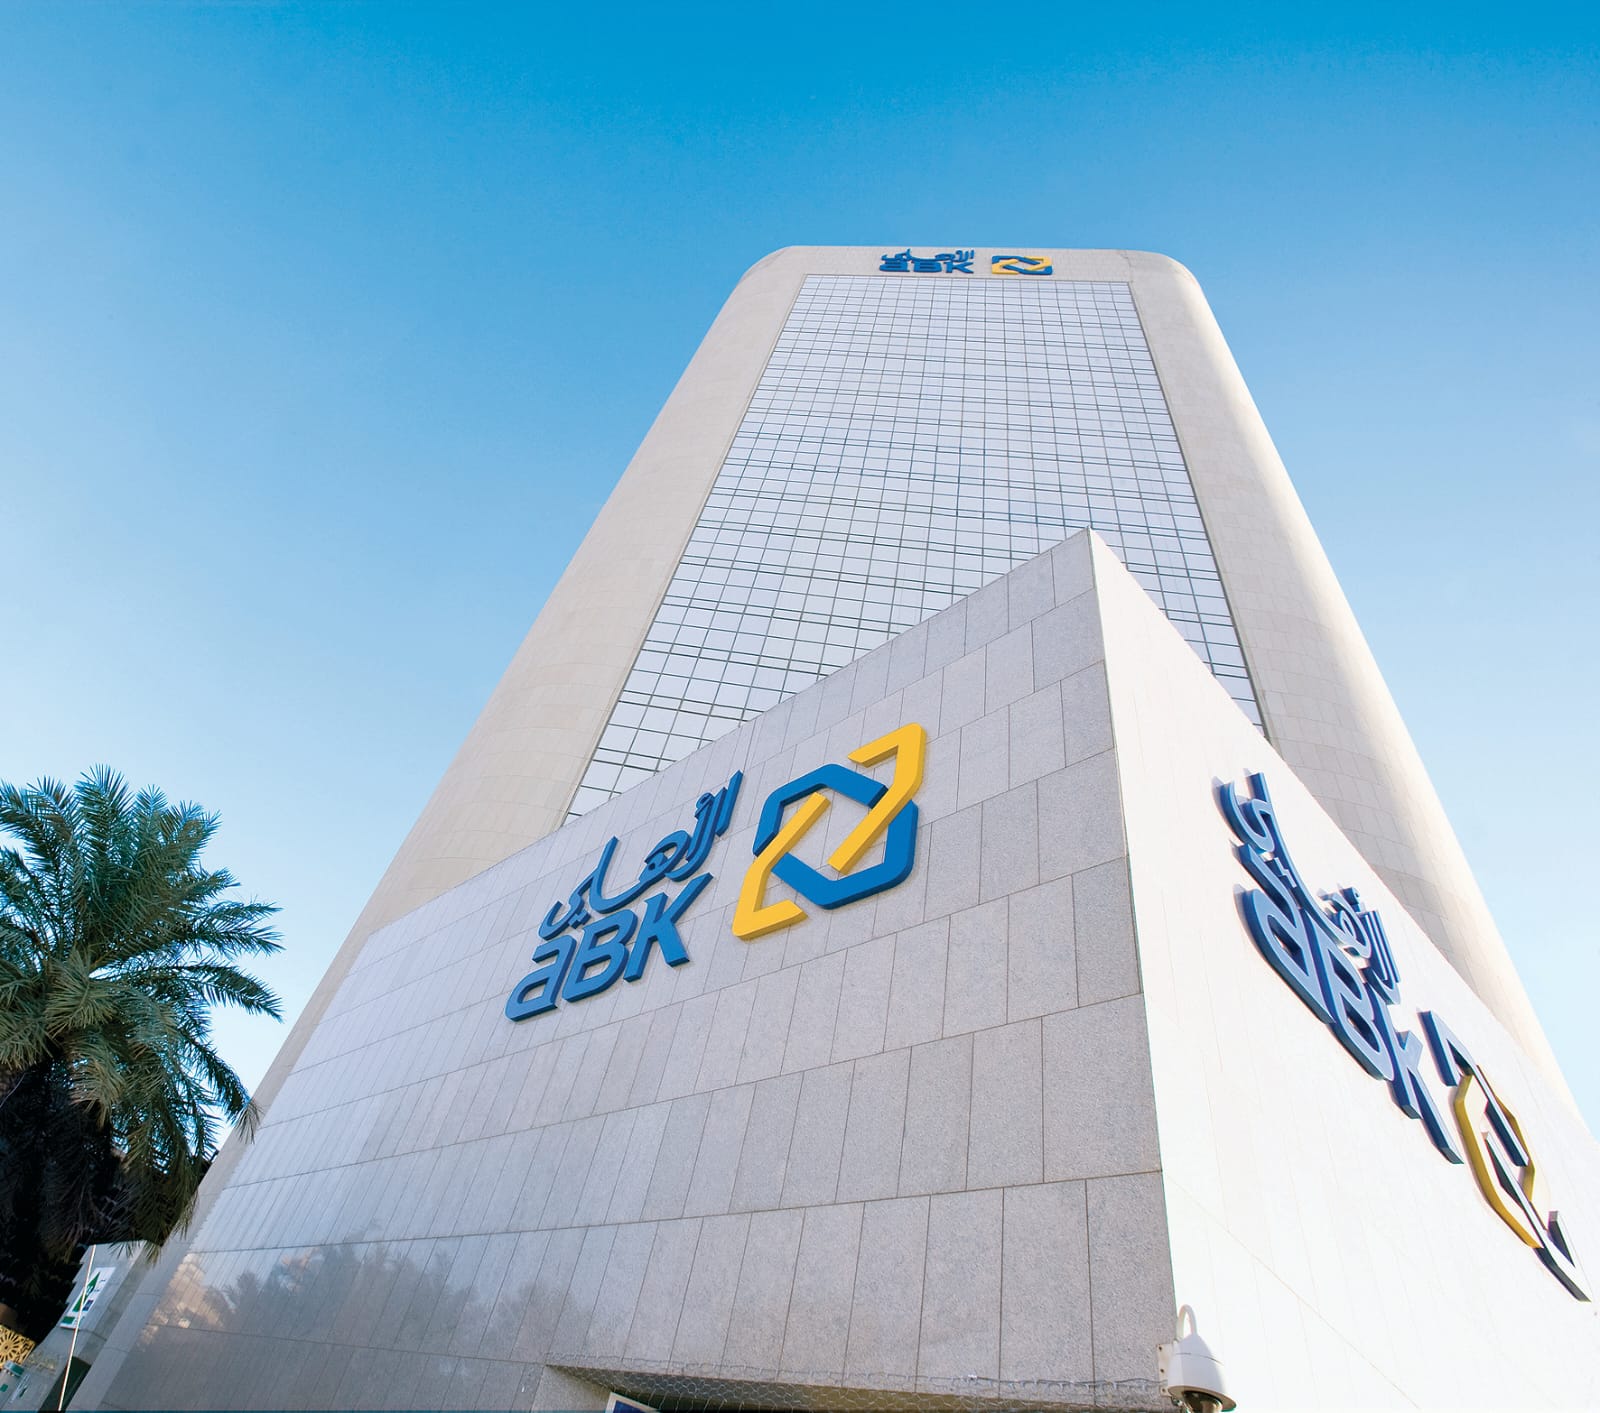  البنك الأهلي الكويتي يبدأ عملية الاكتتاب في زيادة رأسماله بنسبة 26.7%  